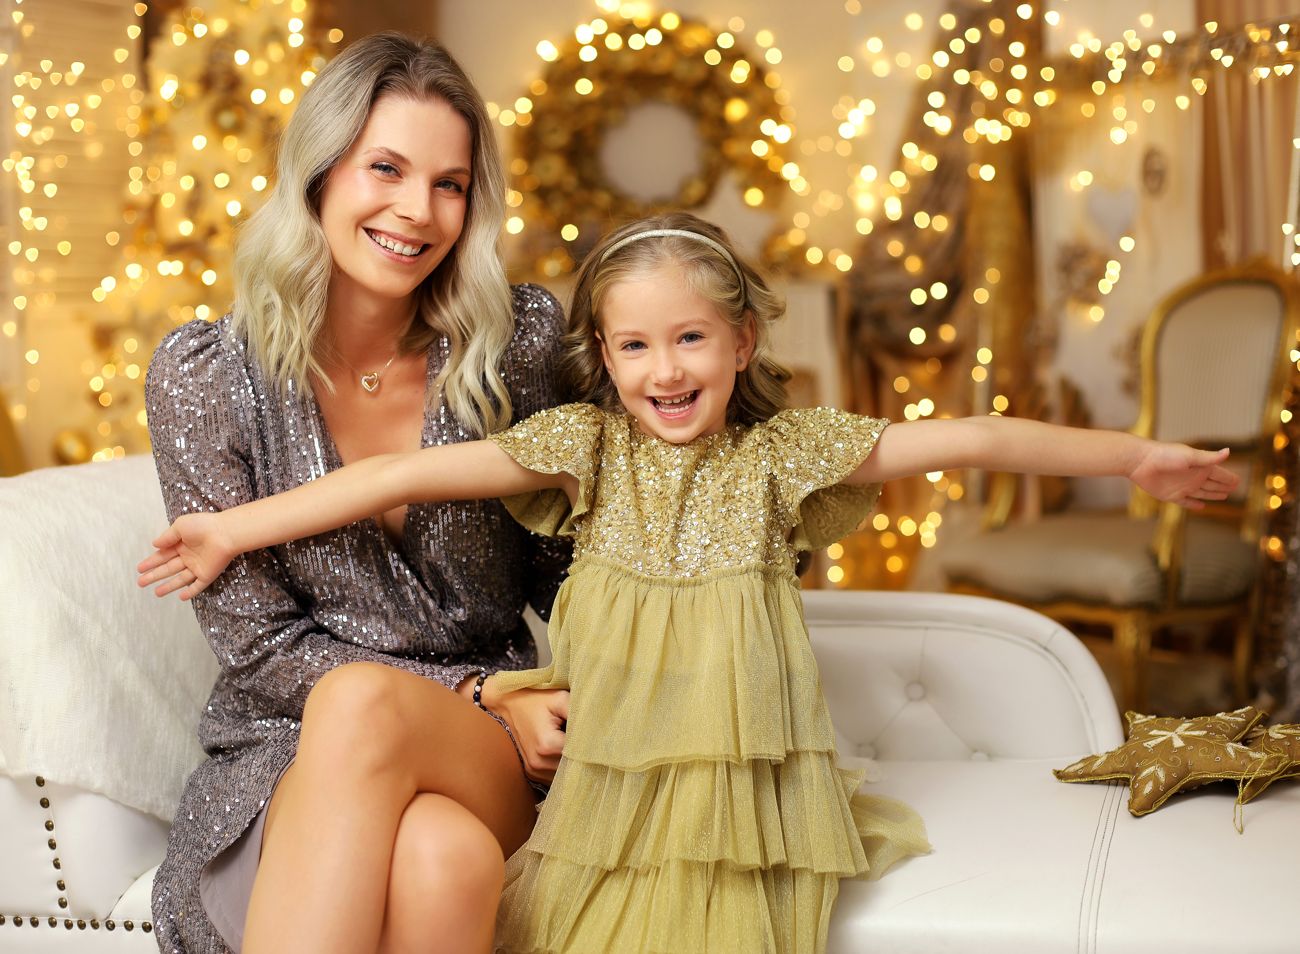 Rodinná vánoční fotografie máma a dcera v ateliéru s vánočními světýlky | © Fotoprome.cz